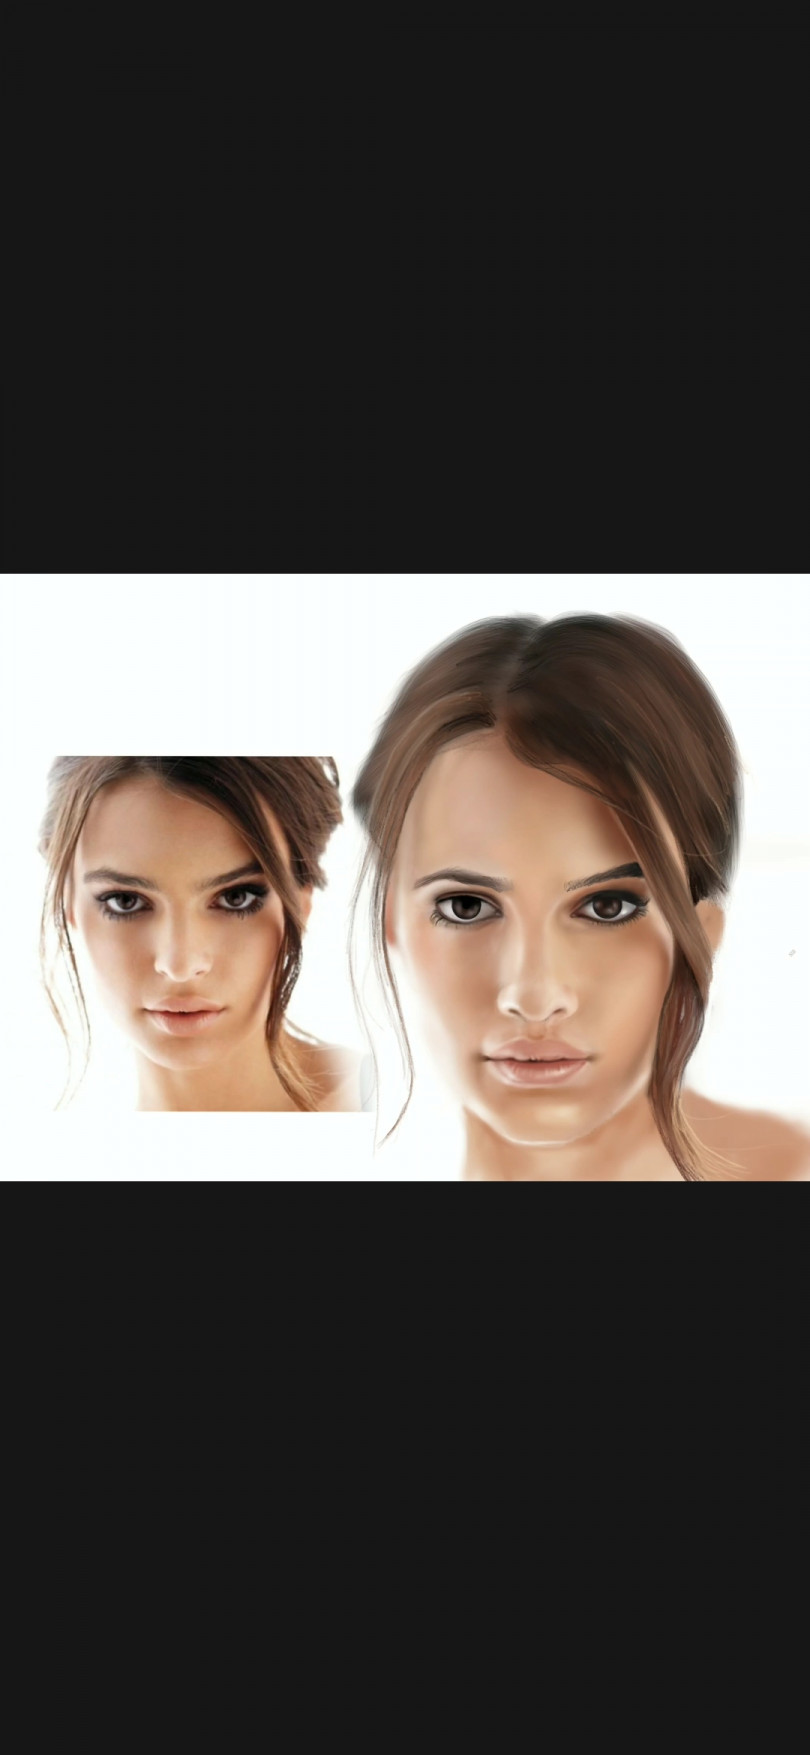 Digital portrait painting